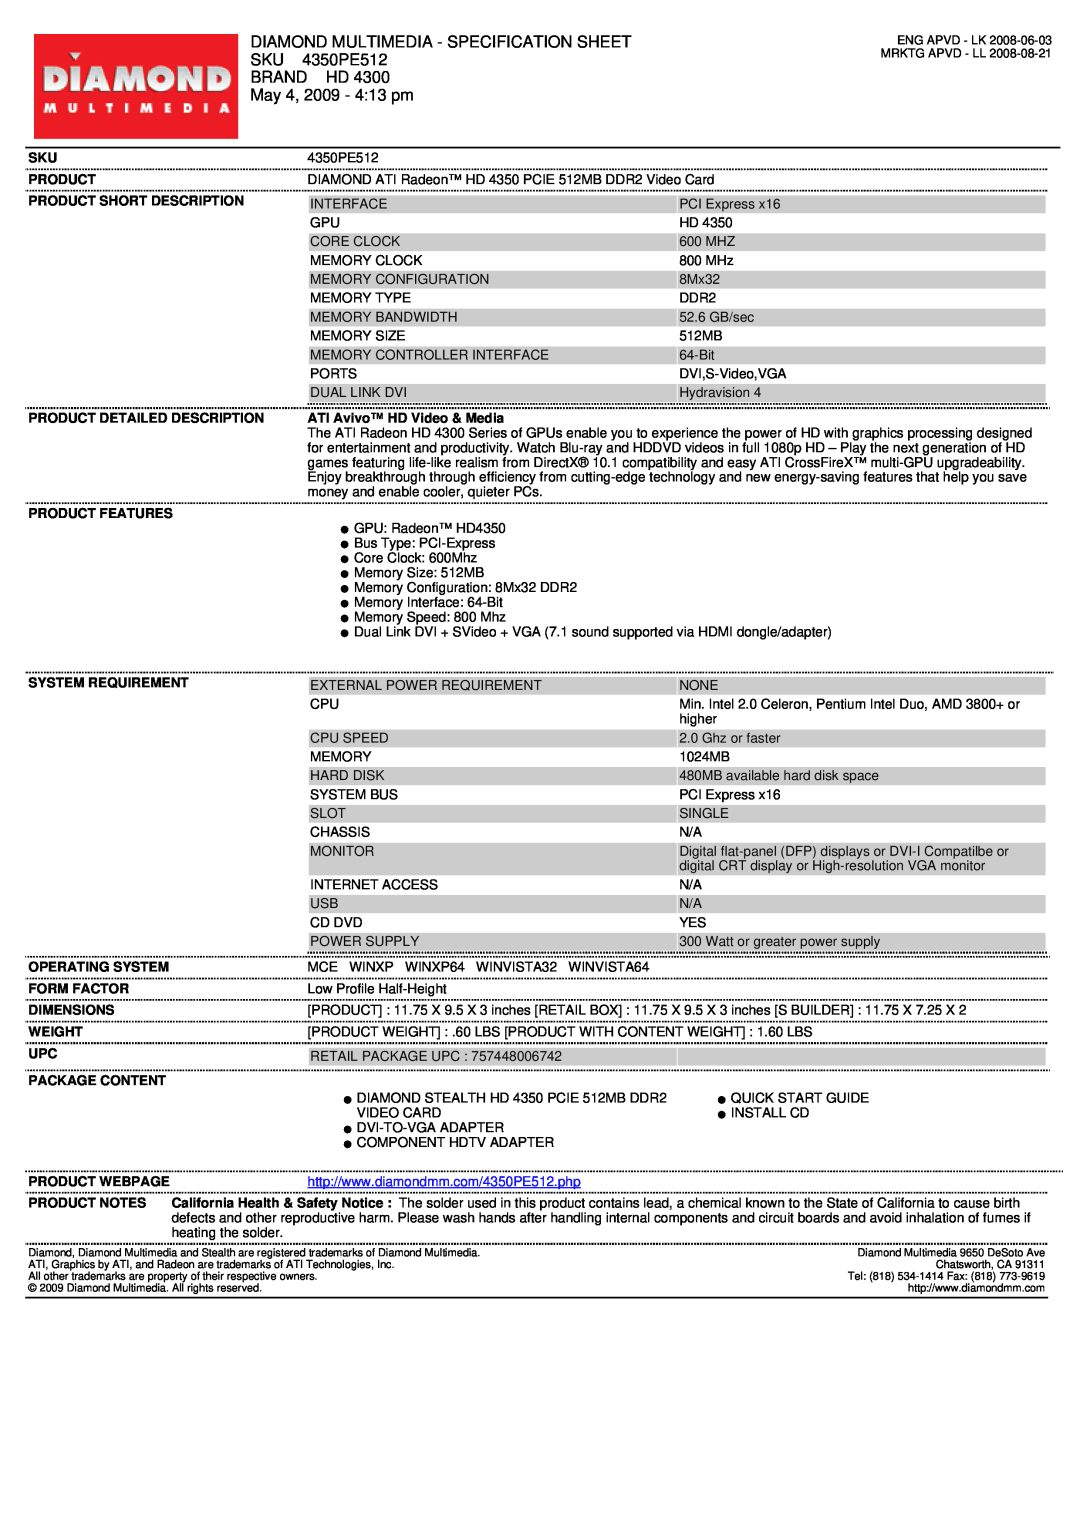 Diamond Multimedia SKU 4350PE512 specifications Diamond Multimedia - Specification Sheet, Brand Hd, May 4, 2009 - 413 pm 